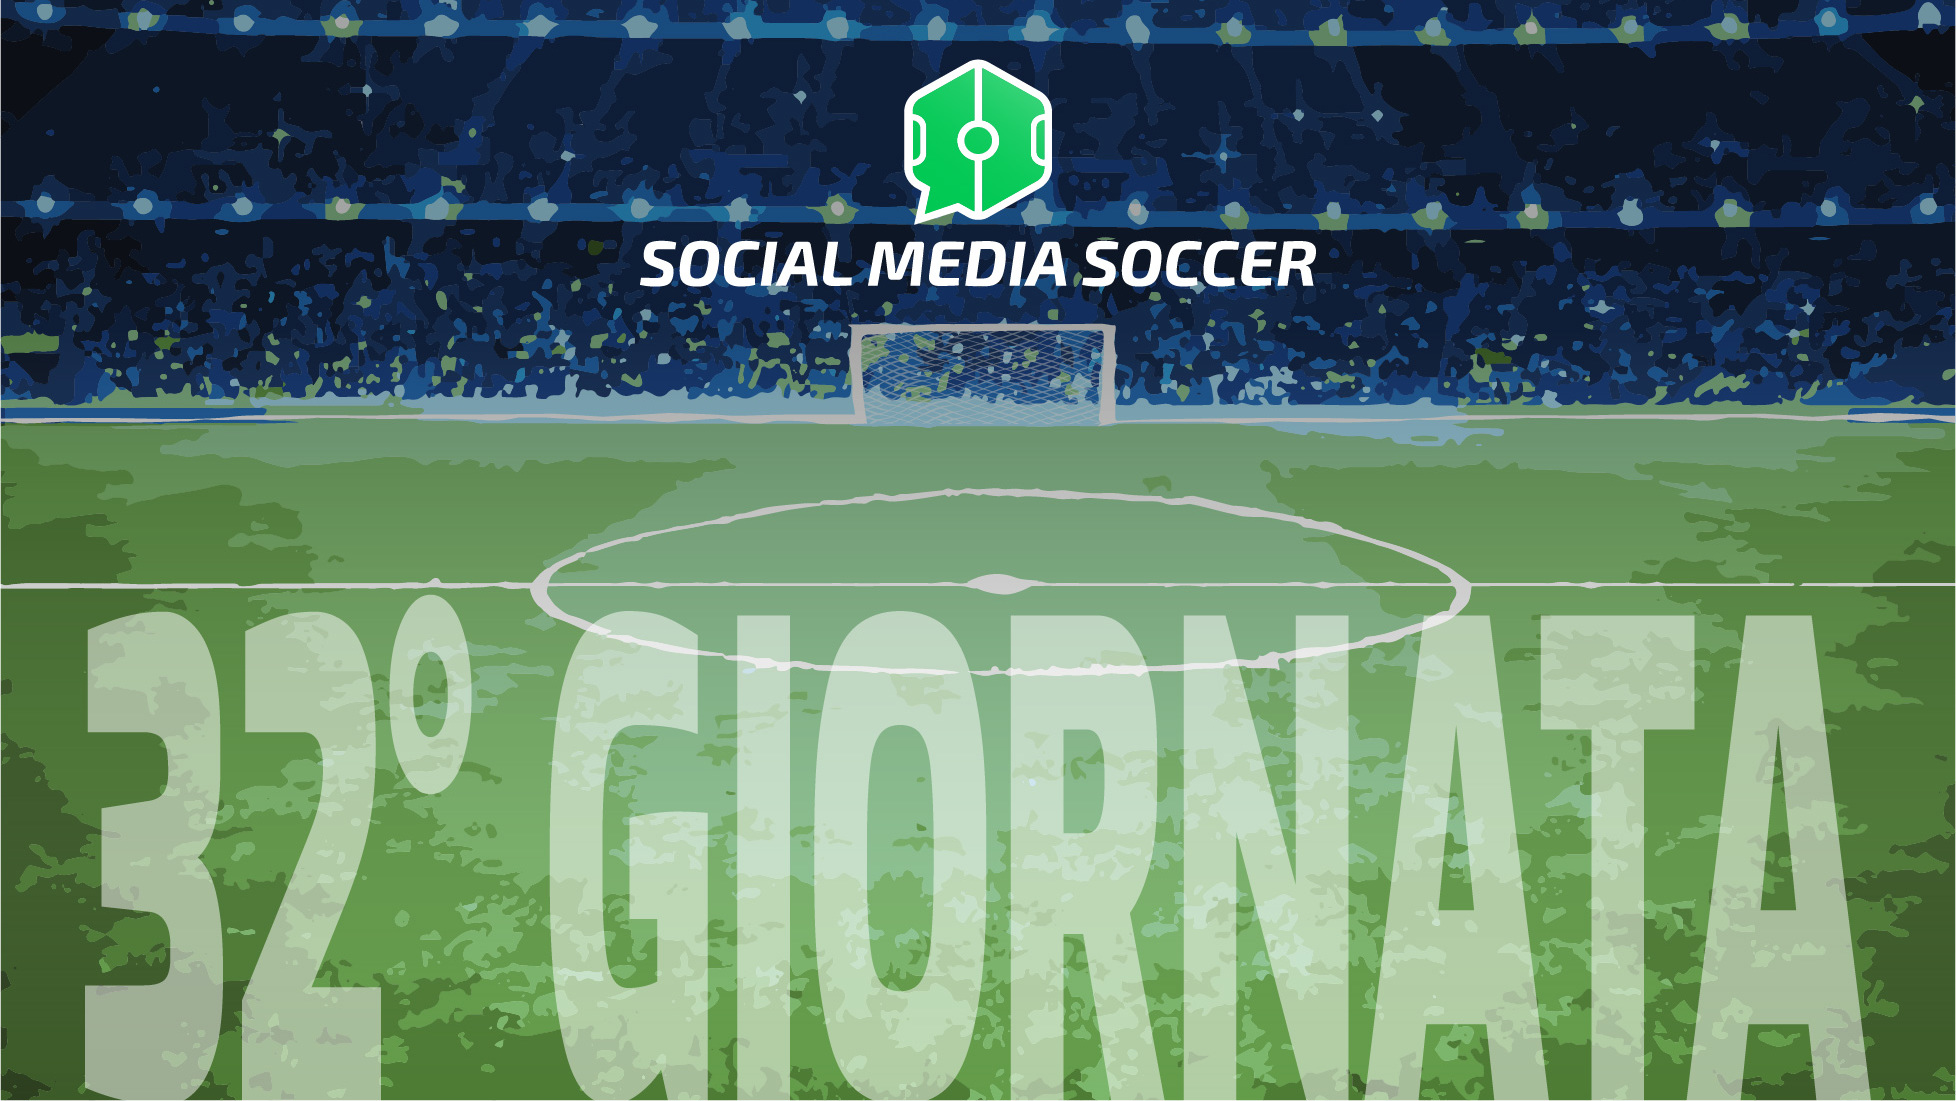 Social Media Soccer 32esima giornata